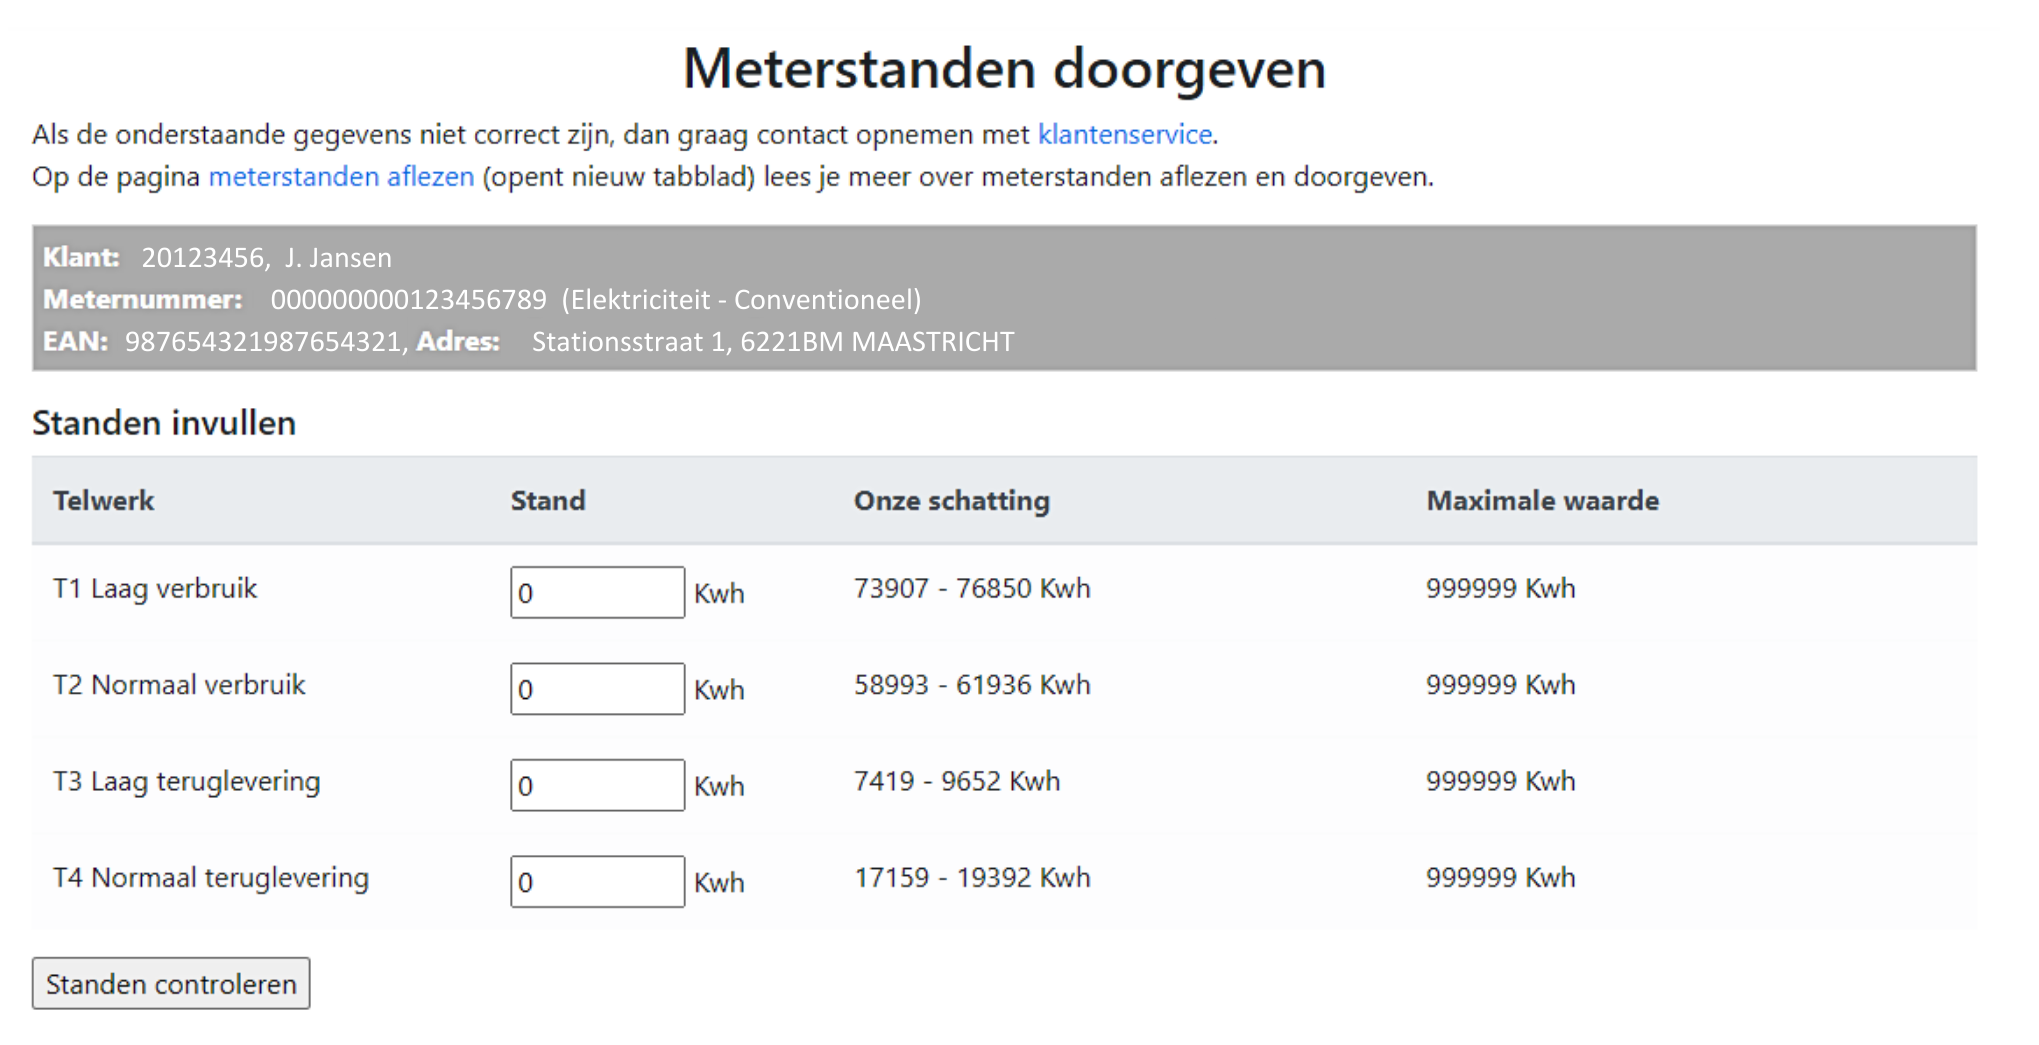 Voorbeeld elektriciteit meterstandenkaart NieuweStroom